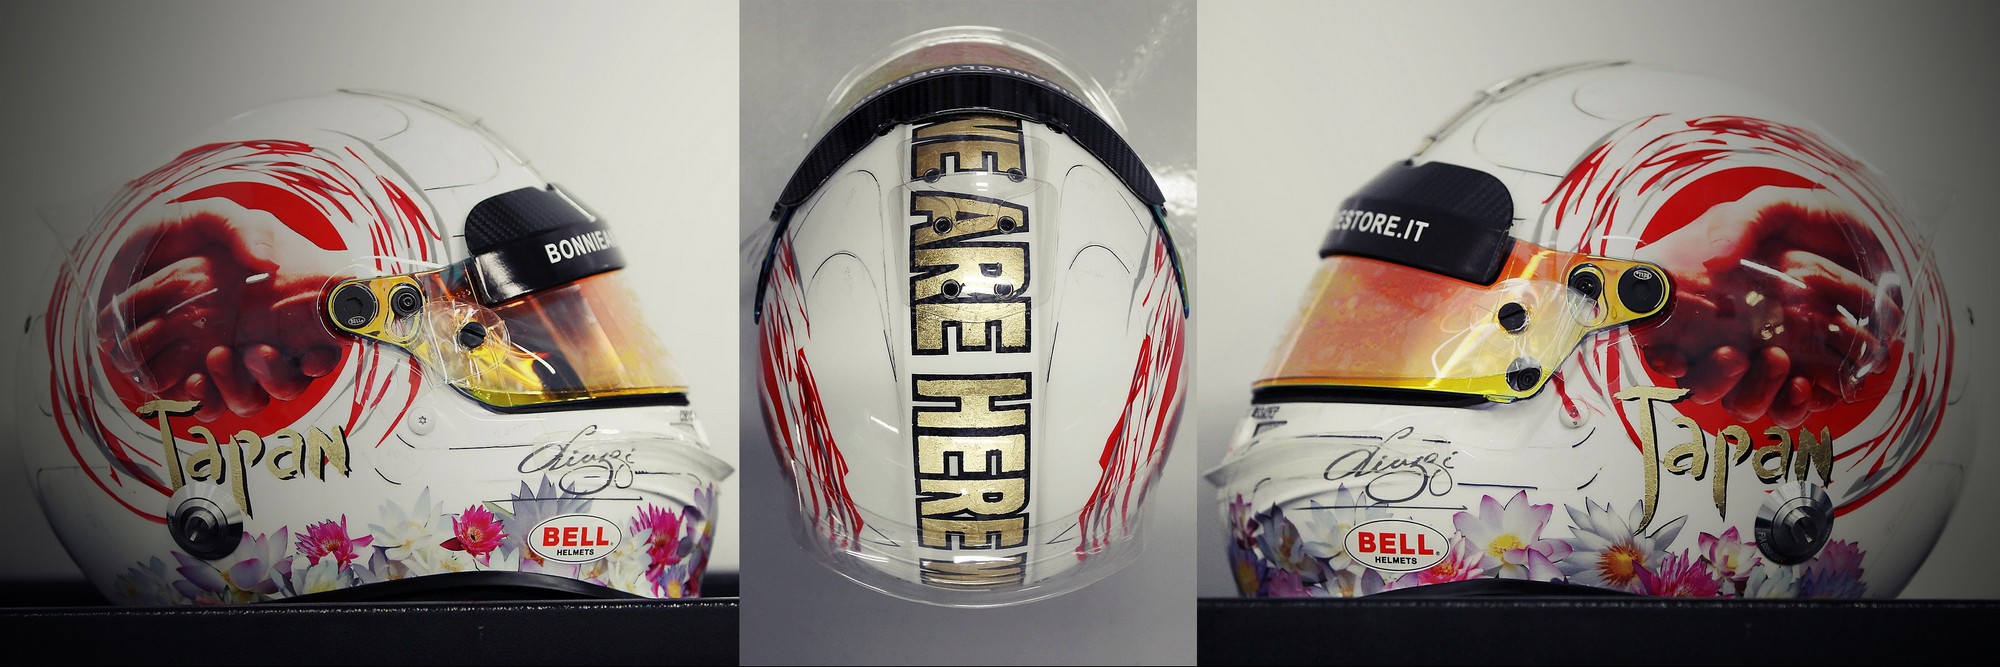 Шлем Витантонио Лиуцци на Гран-При Японии 2011 года | 2011 Japanese Grand Prix helmet of Vitantonio Liuzzi